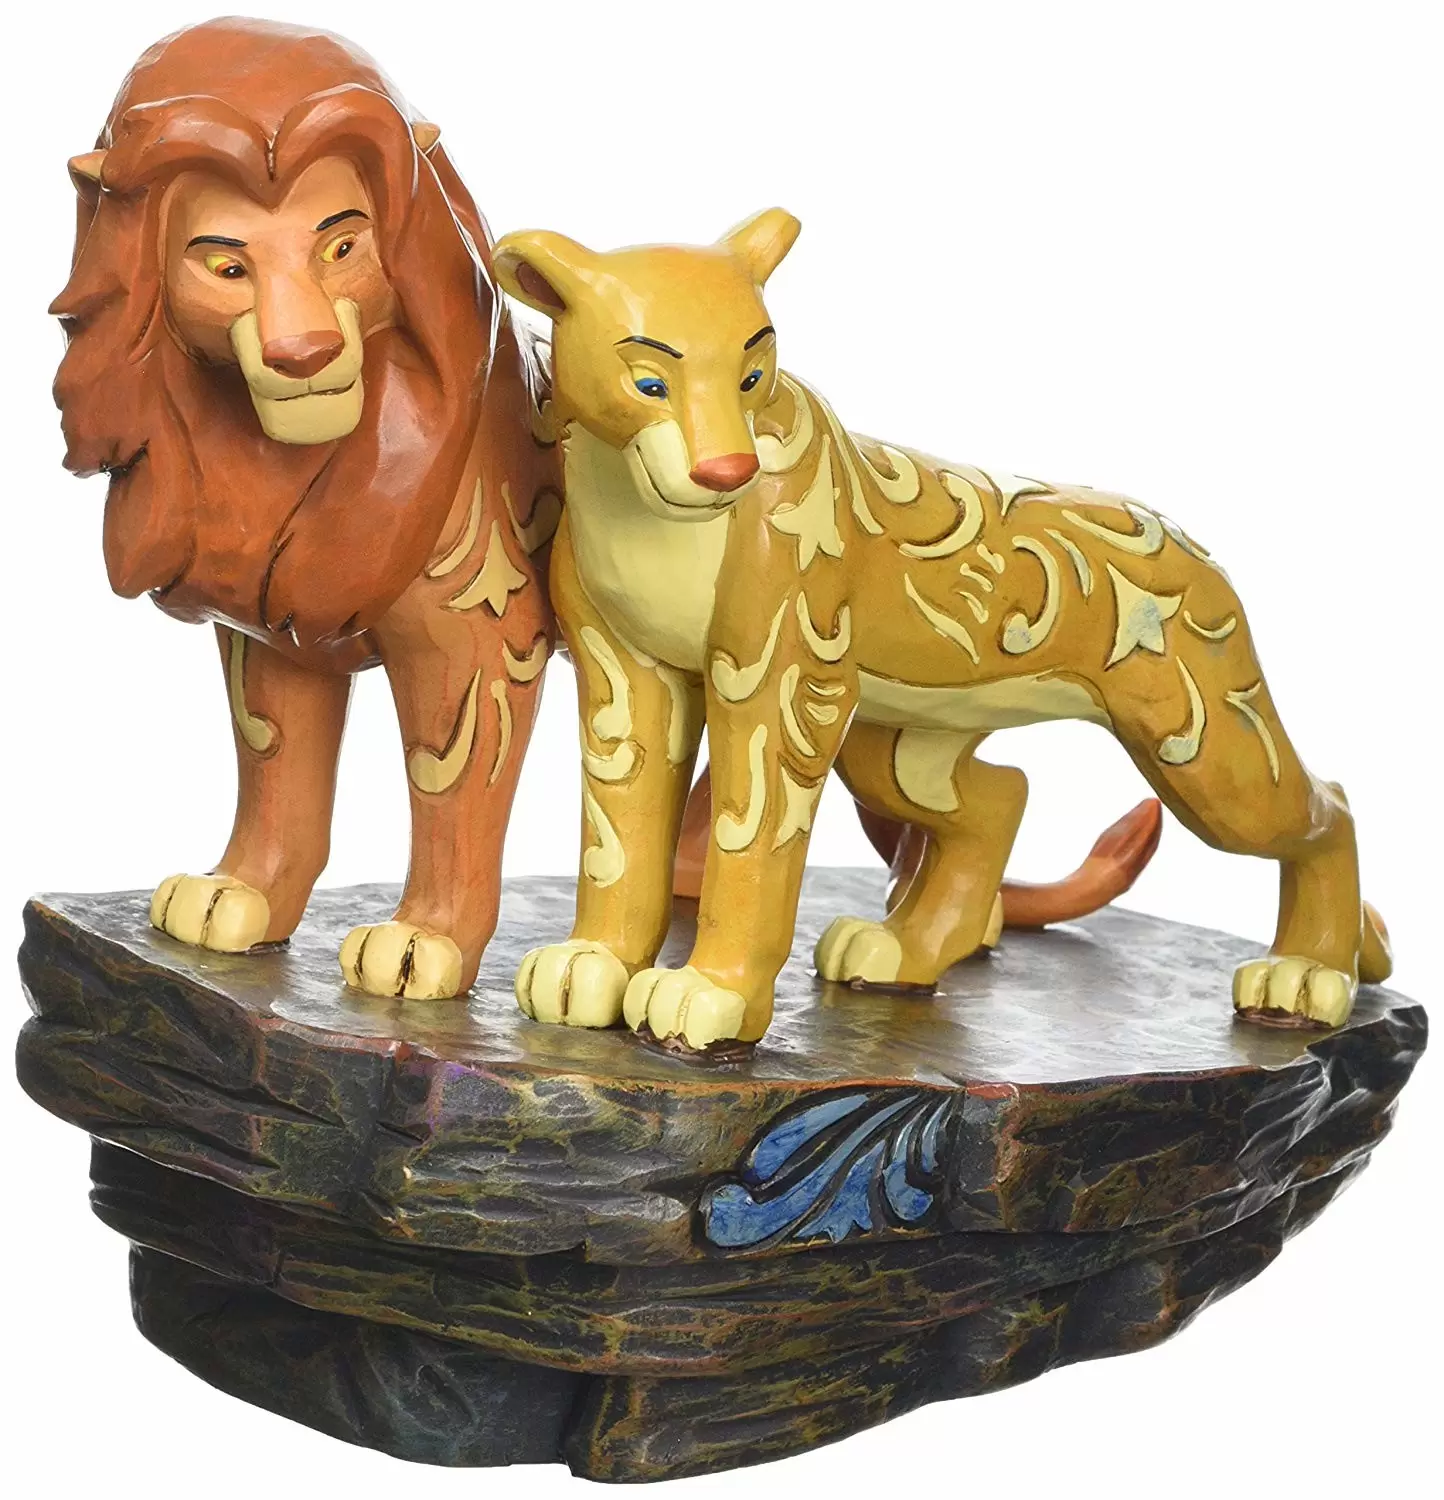 Disney Traditions by Jim Shore - Simba and Nala Love At Pride Rock